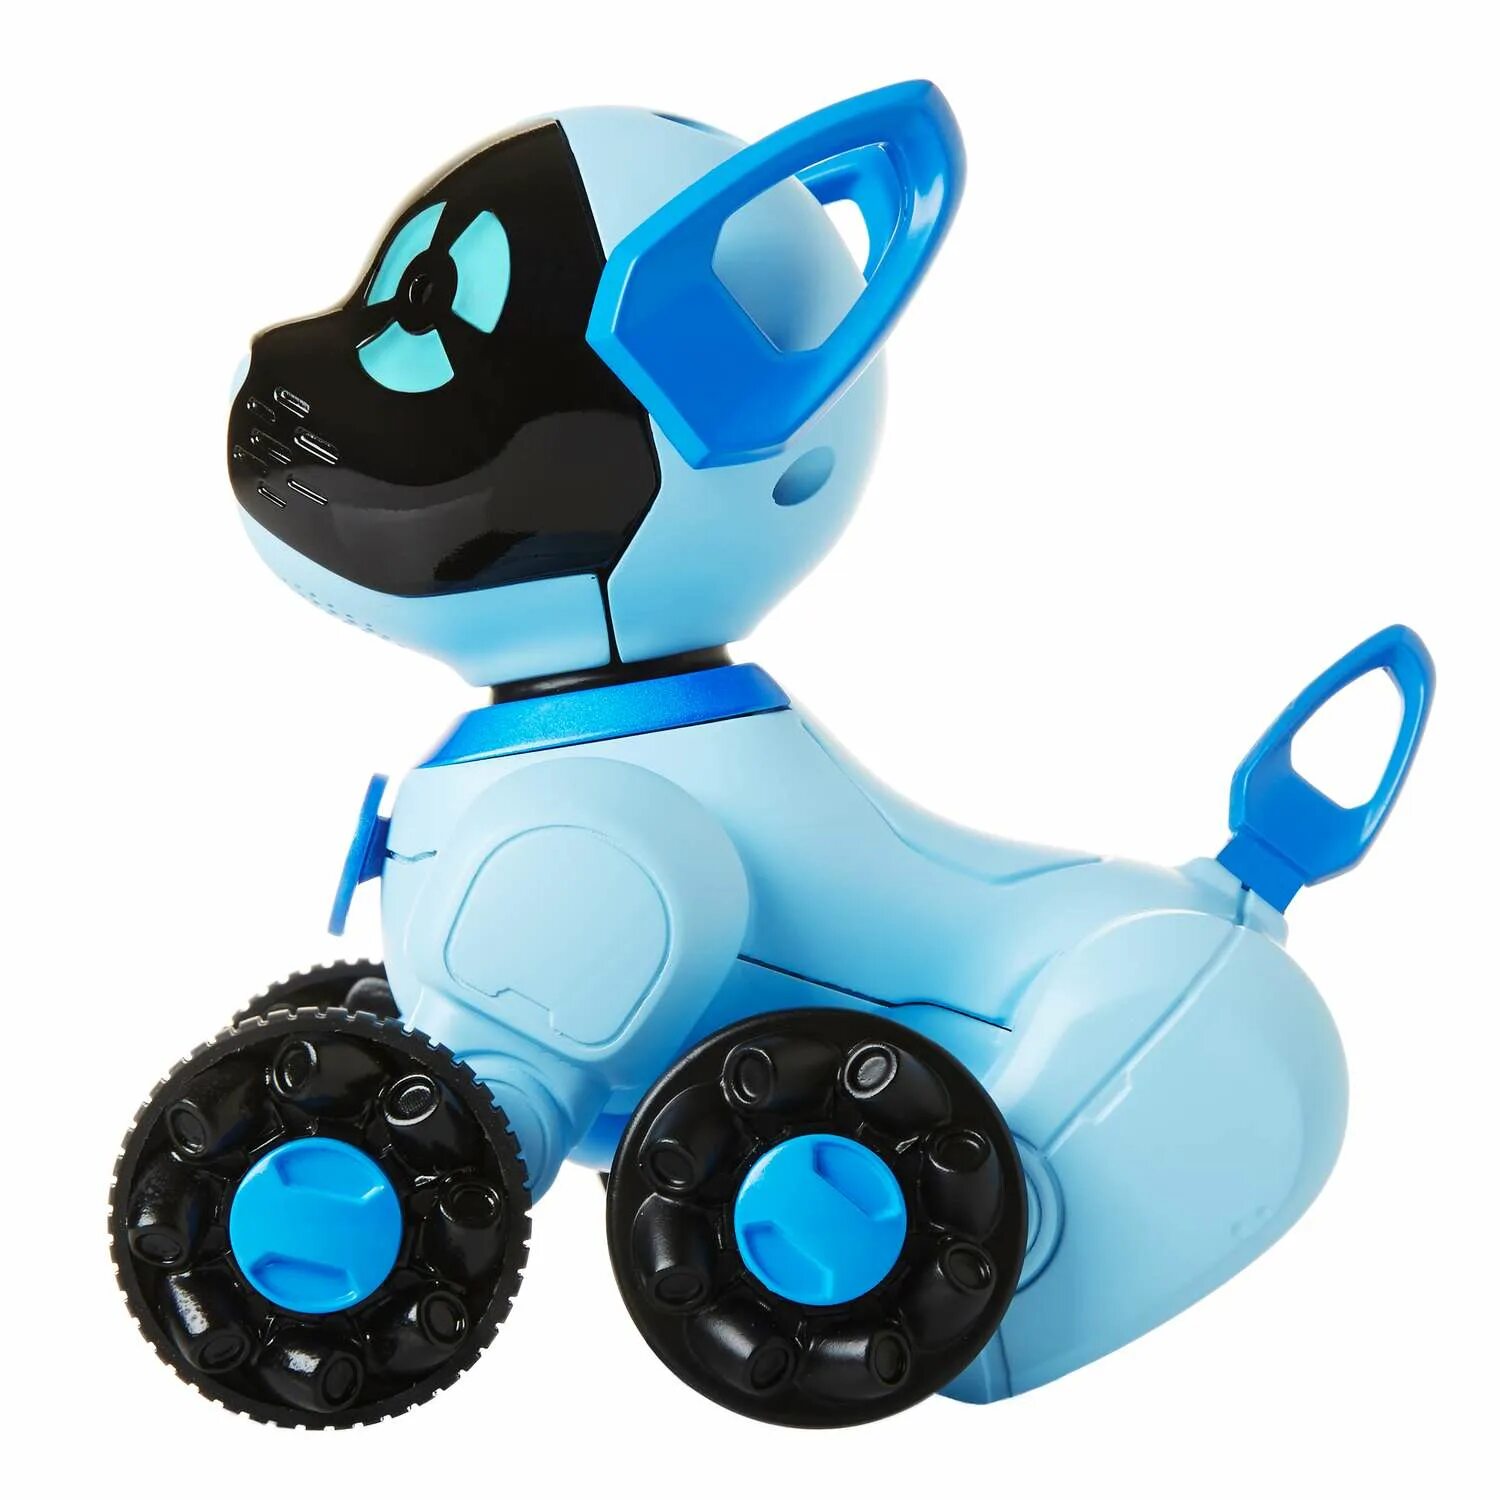 Включи чипик. Робот WOWWEE Chippies. Робот WOWWEE собачка. Робот WOWWEE Chippies 2804-3818 (Blue). Робот собака WOWWEE Chip.